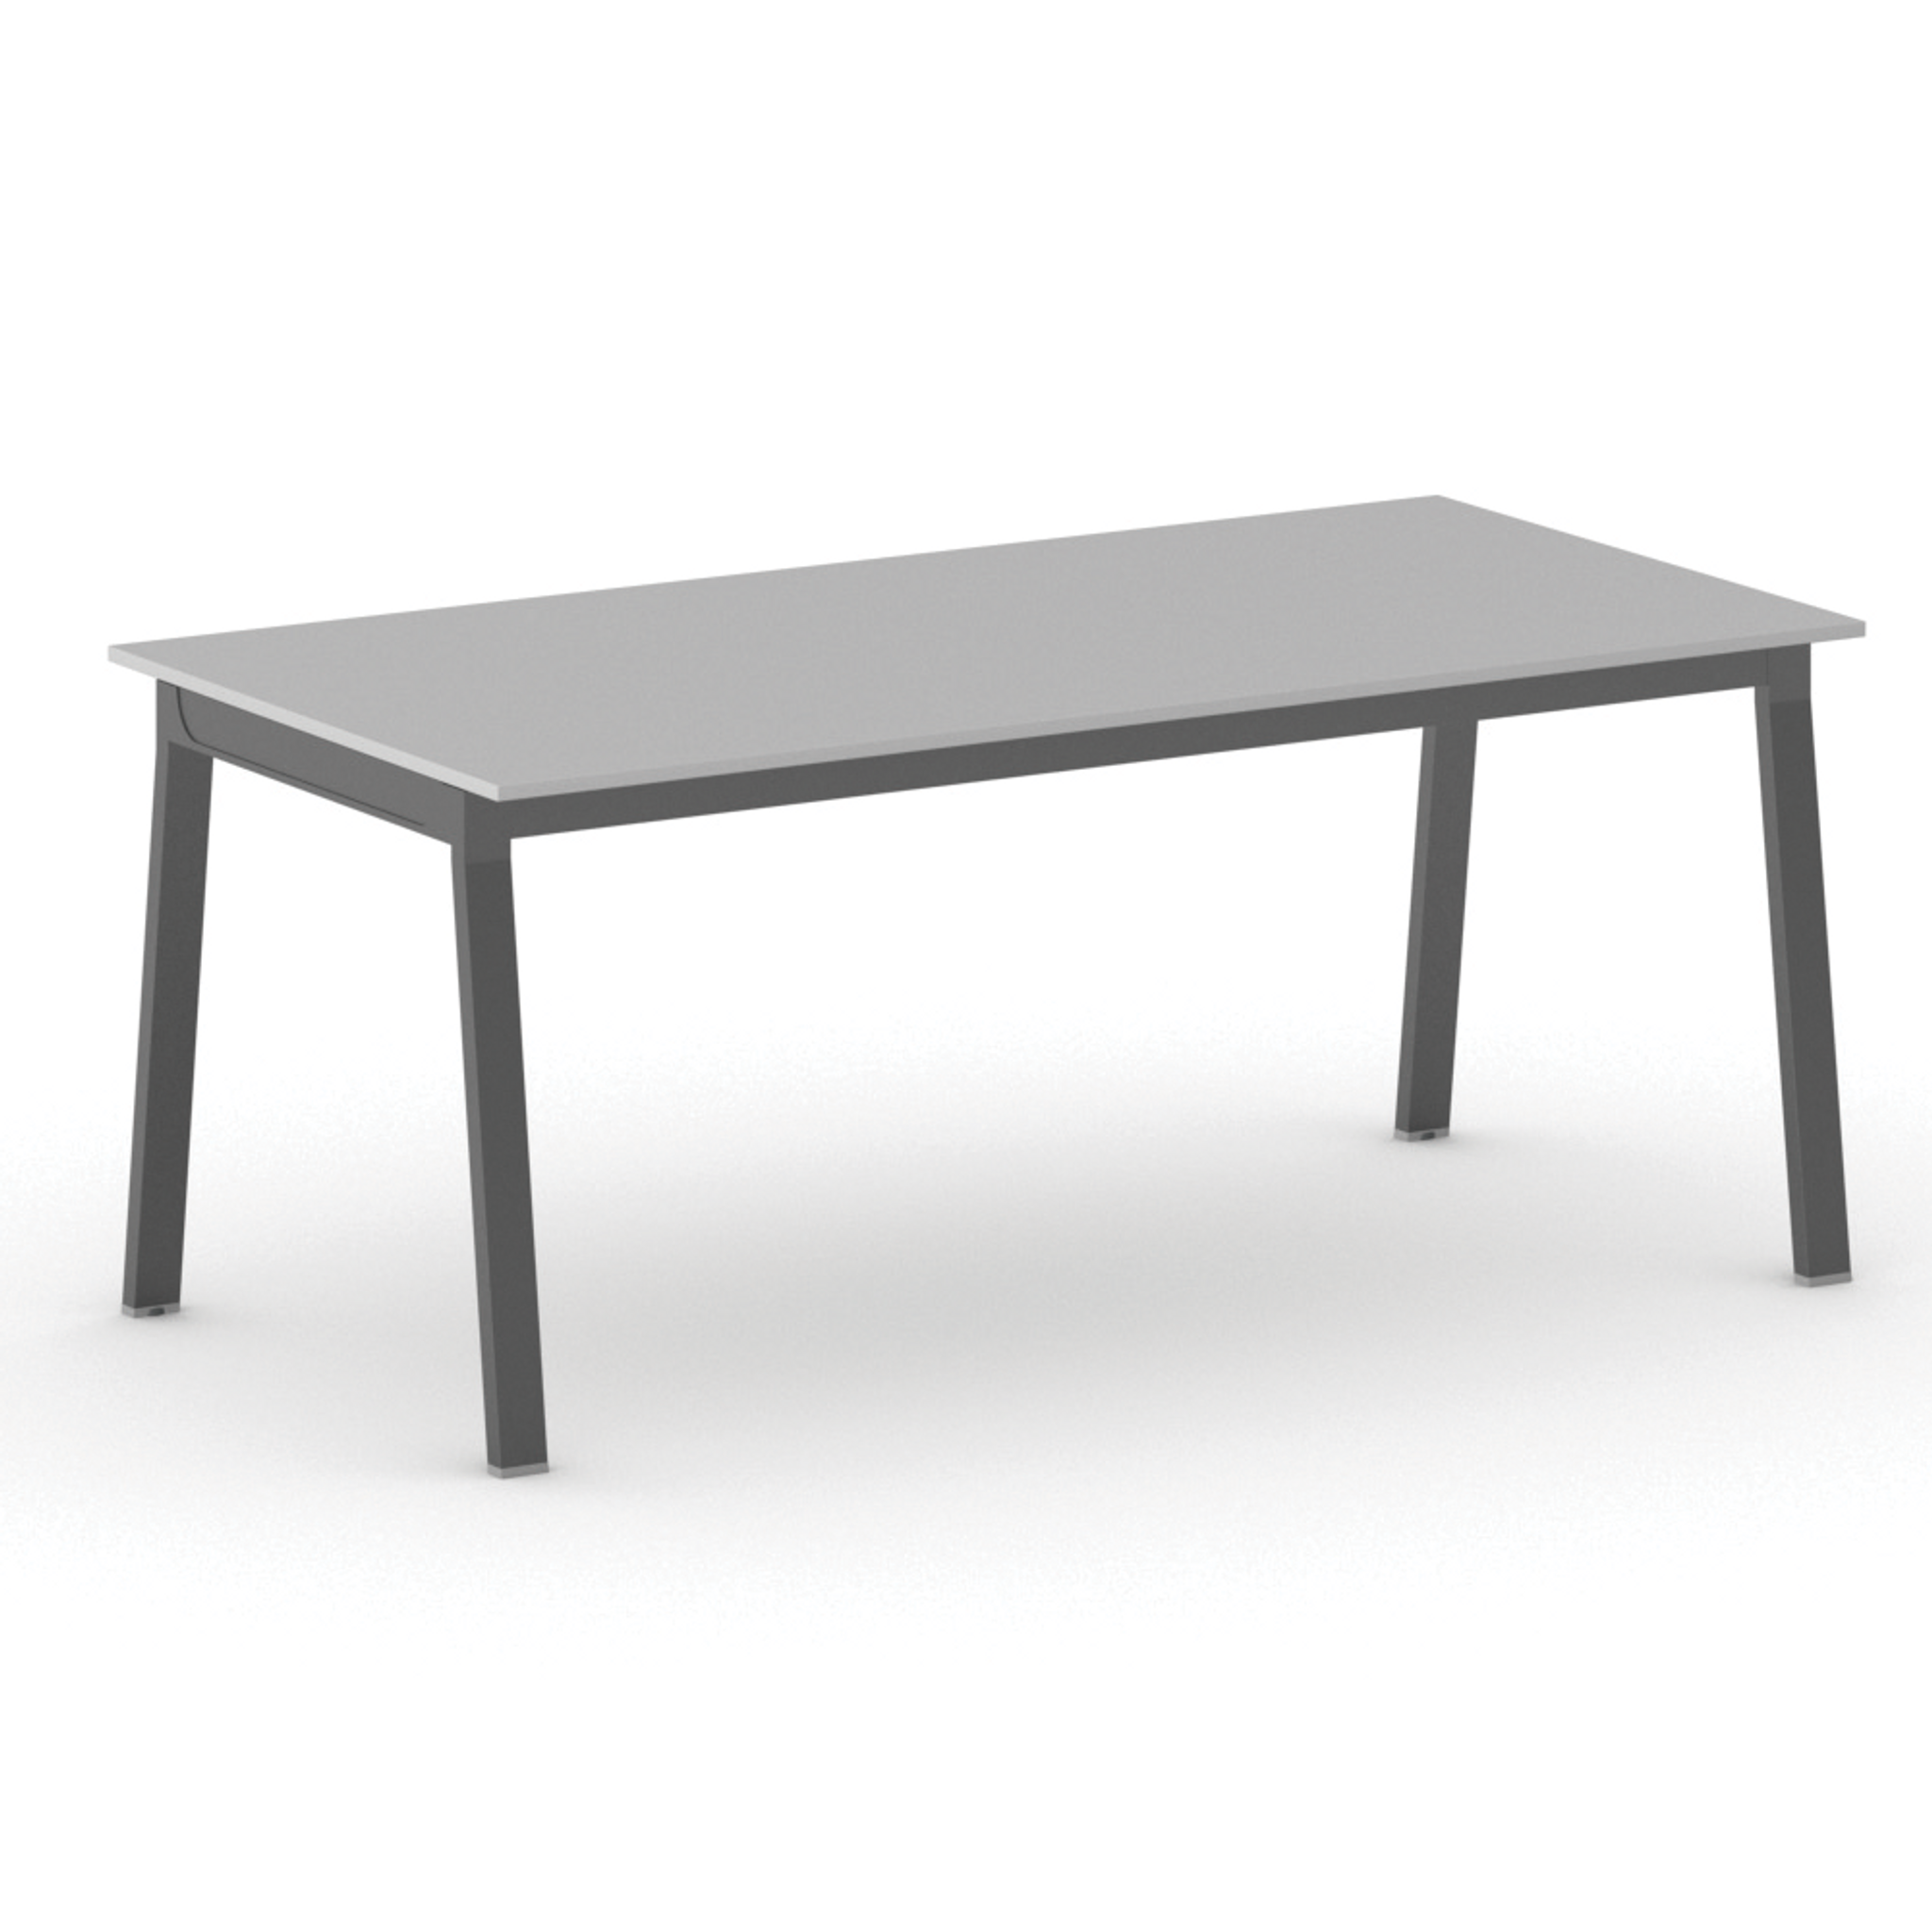 Kancelářský pracovní stůl PRIMO BASIC, černá podnož, 1800 x 900 mm, šedá